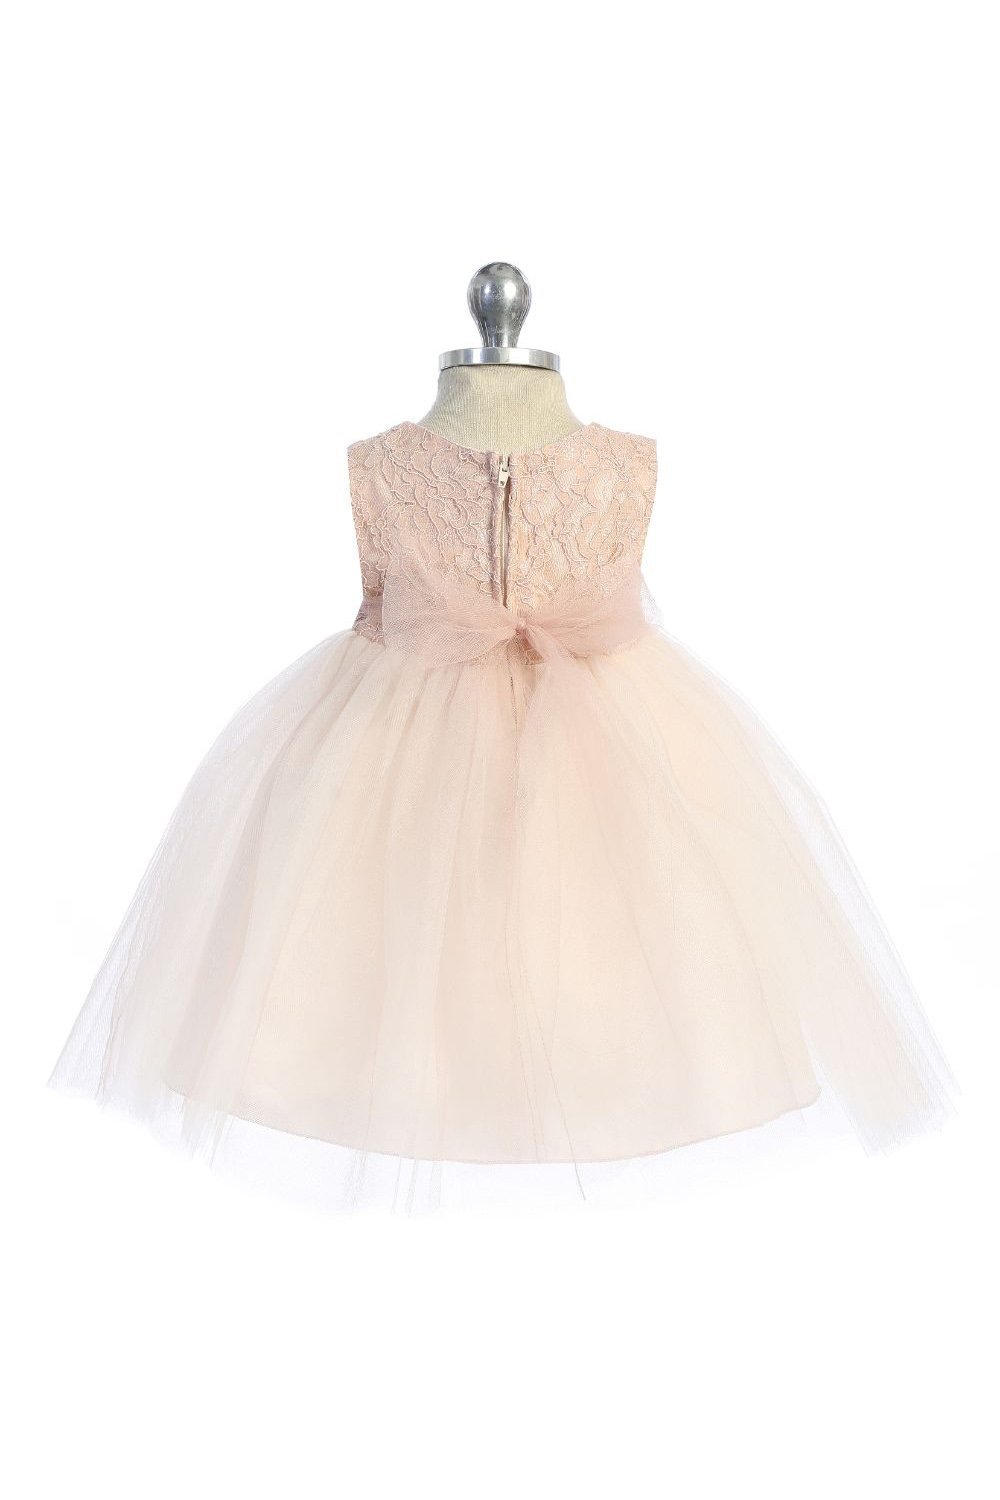 Dress - Blush Pink Lace Illusion Baby Dress